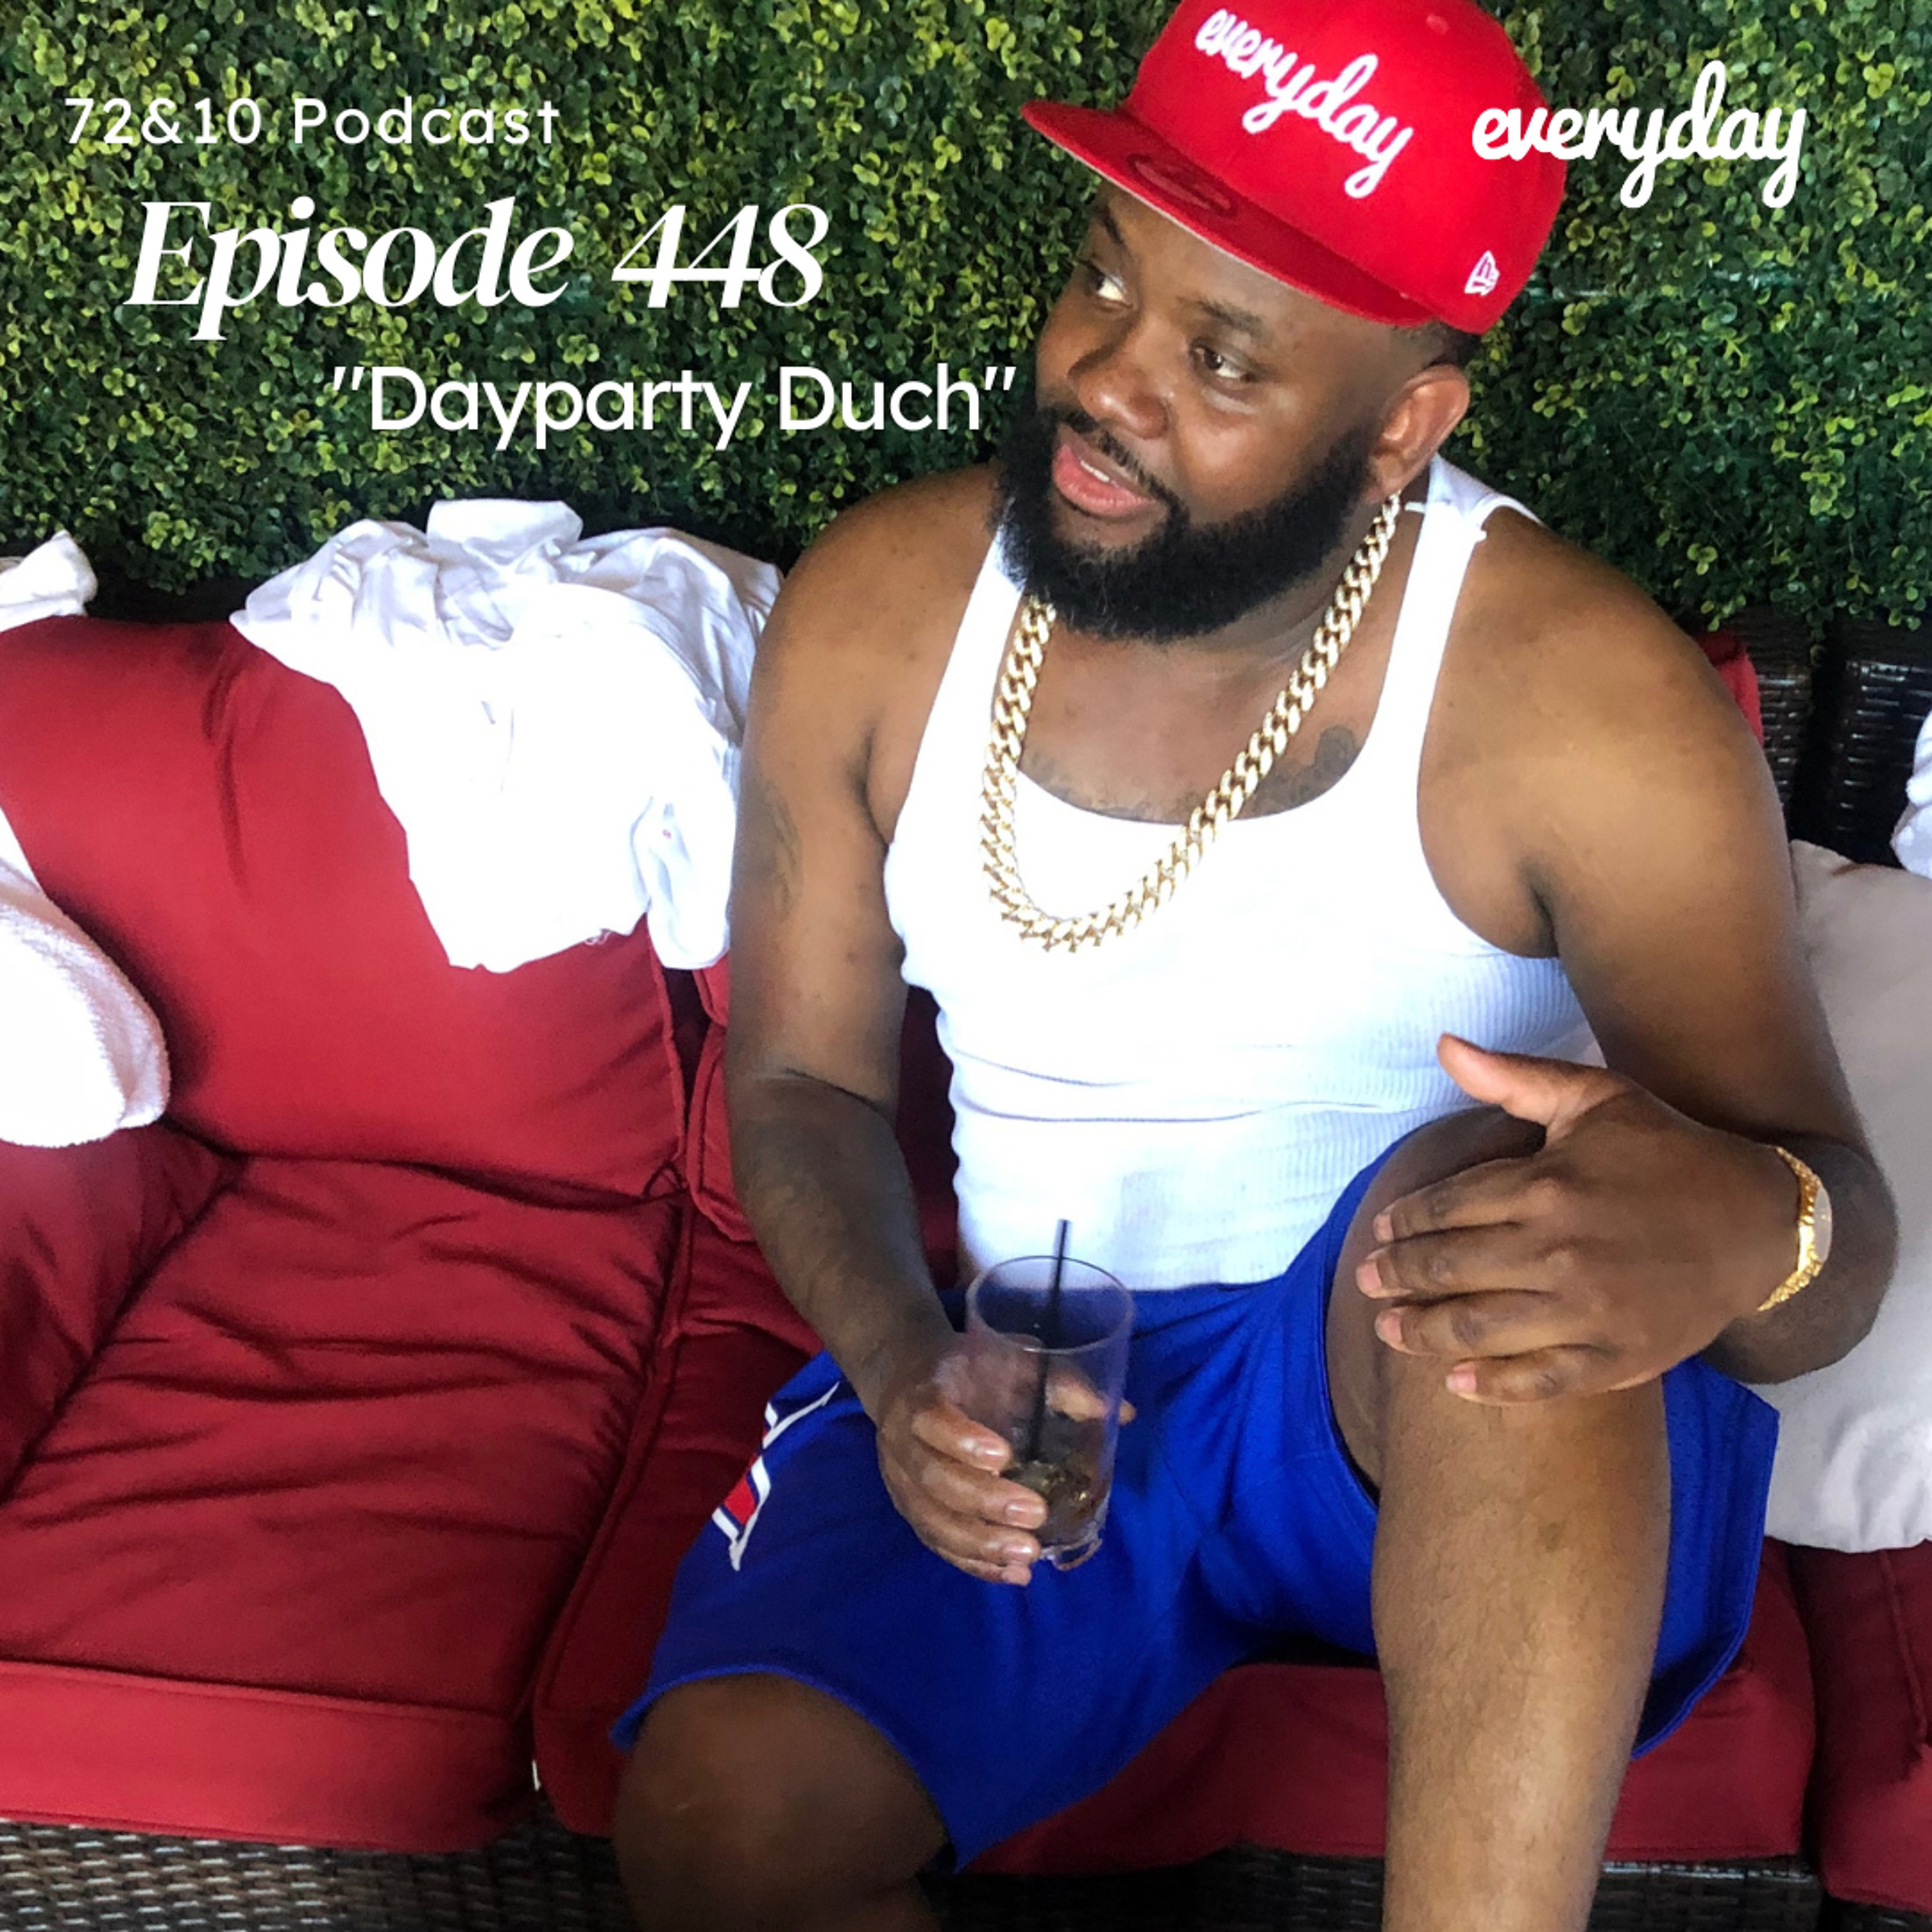 Season 9 Episode 448 ”Dayparty Duch”